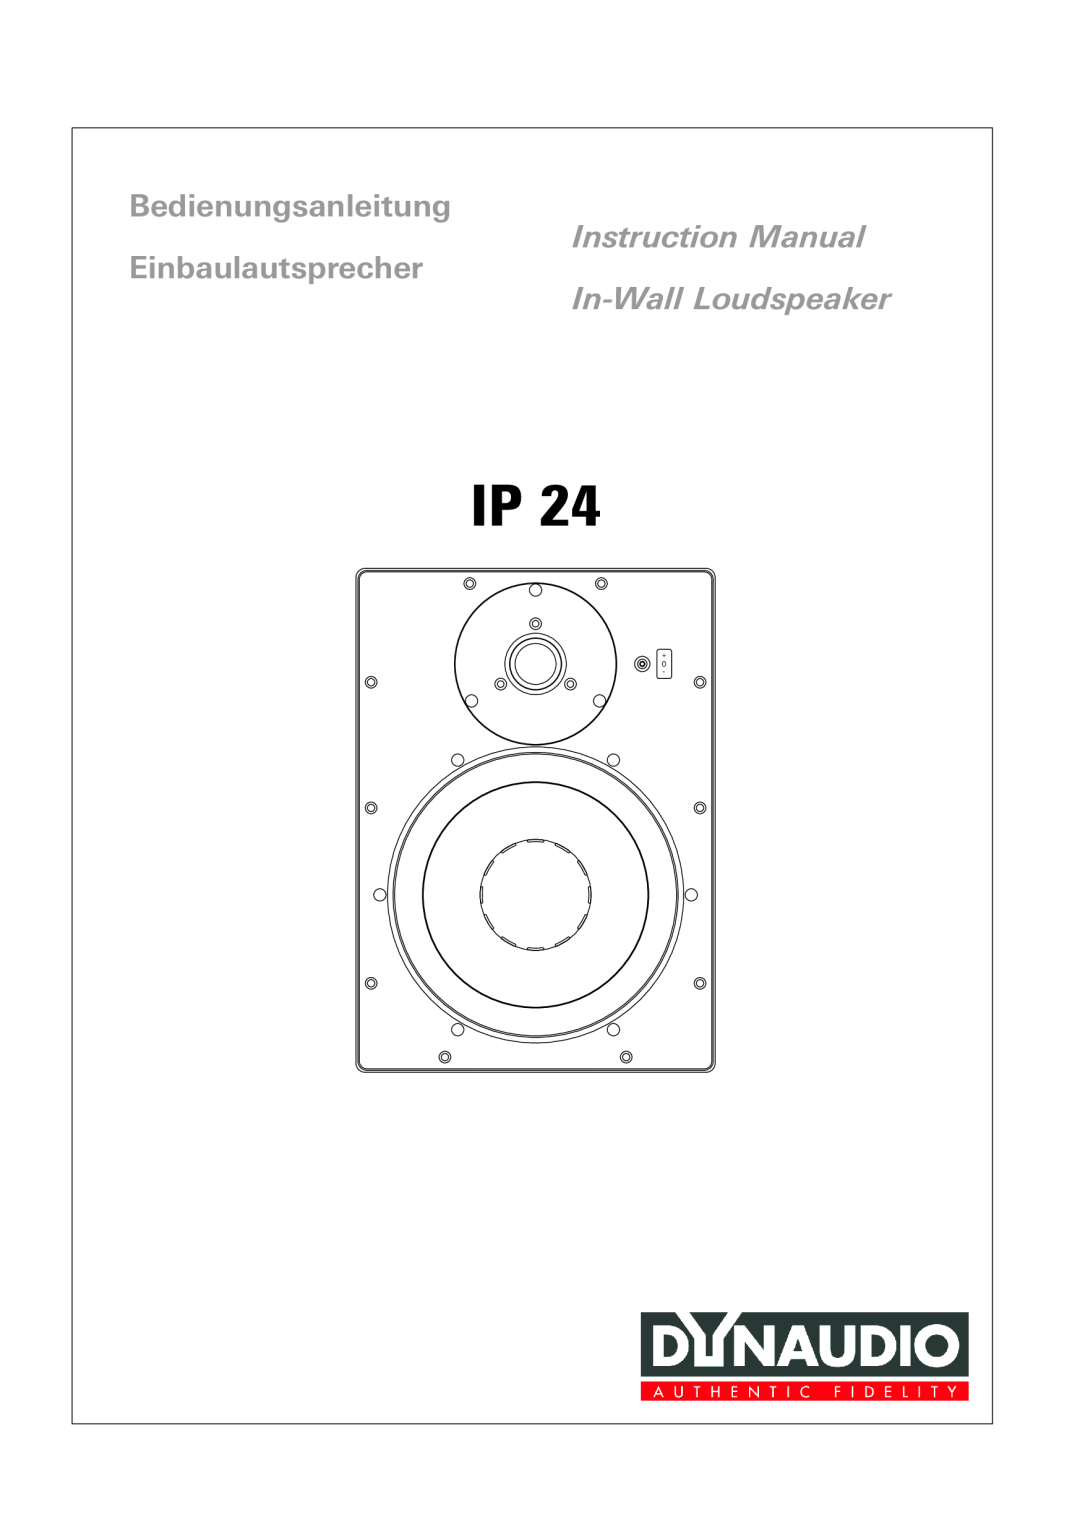 Dynaudio IP 24 instruction manual Bedienungsanleitung, Einbaulautsprecher, In-WallLoudspeaker 